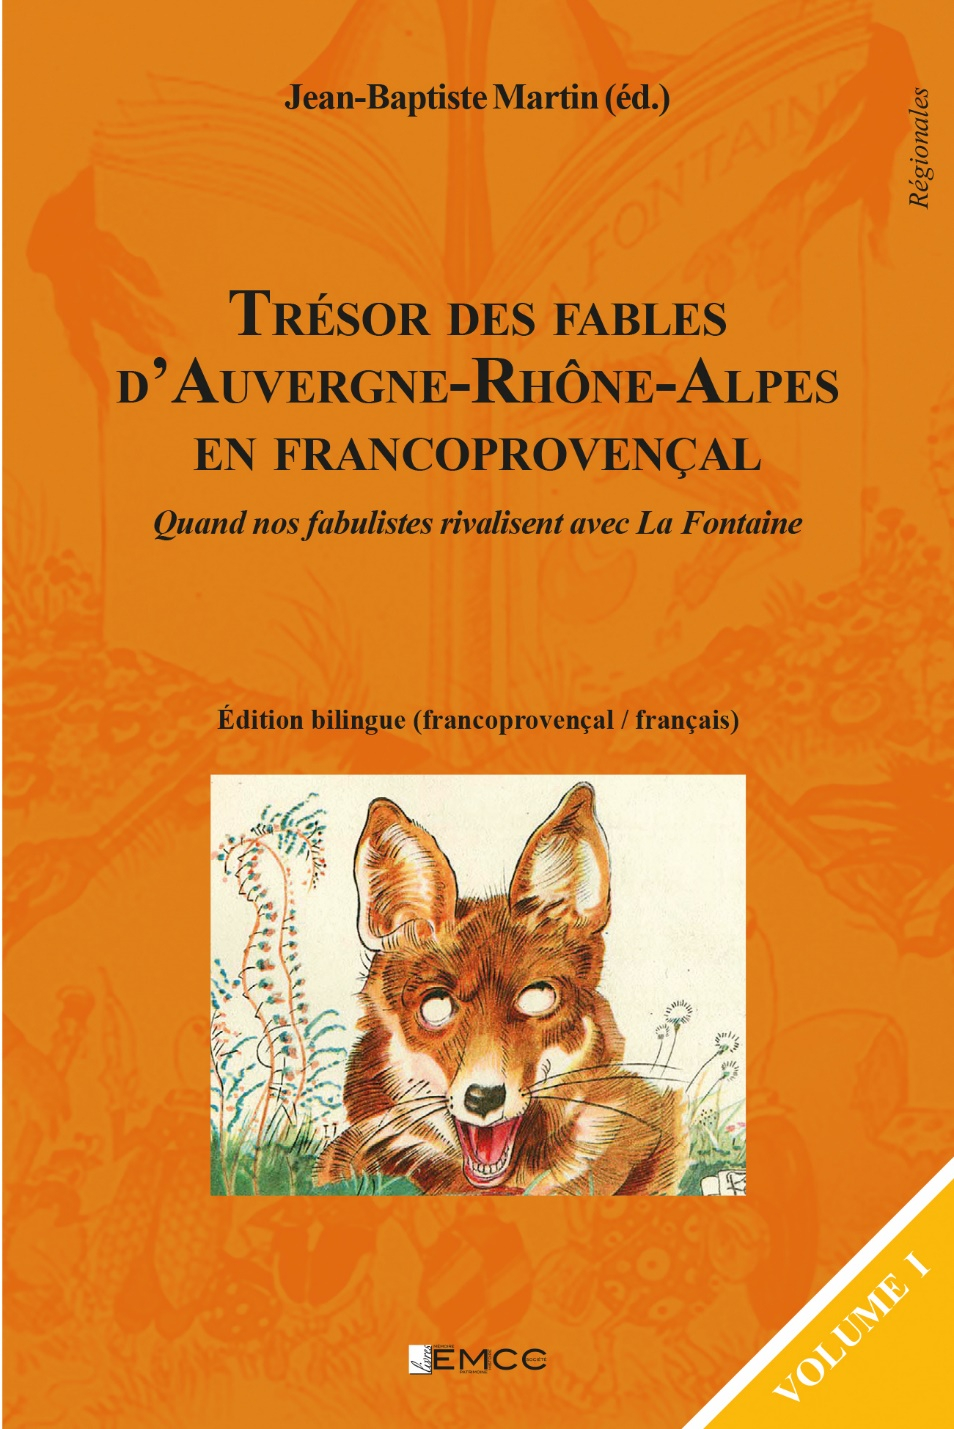 Le Trésor des Fables en Auvergne-Rhône-Alpes écrites en occitan et en francoprovençal